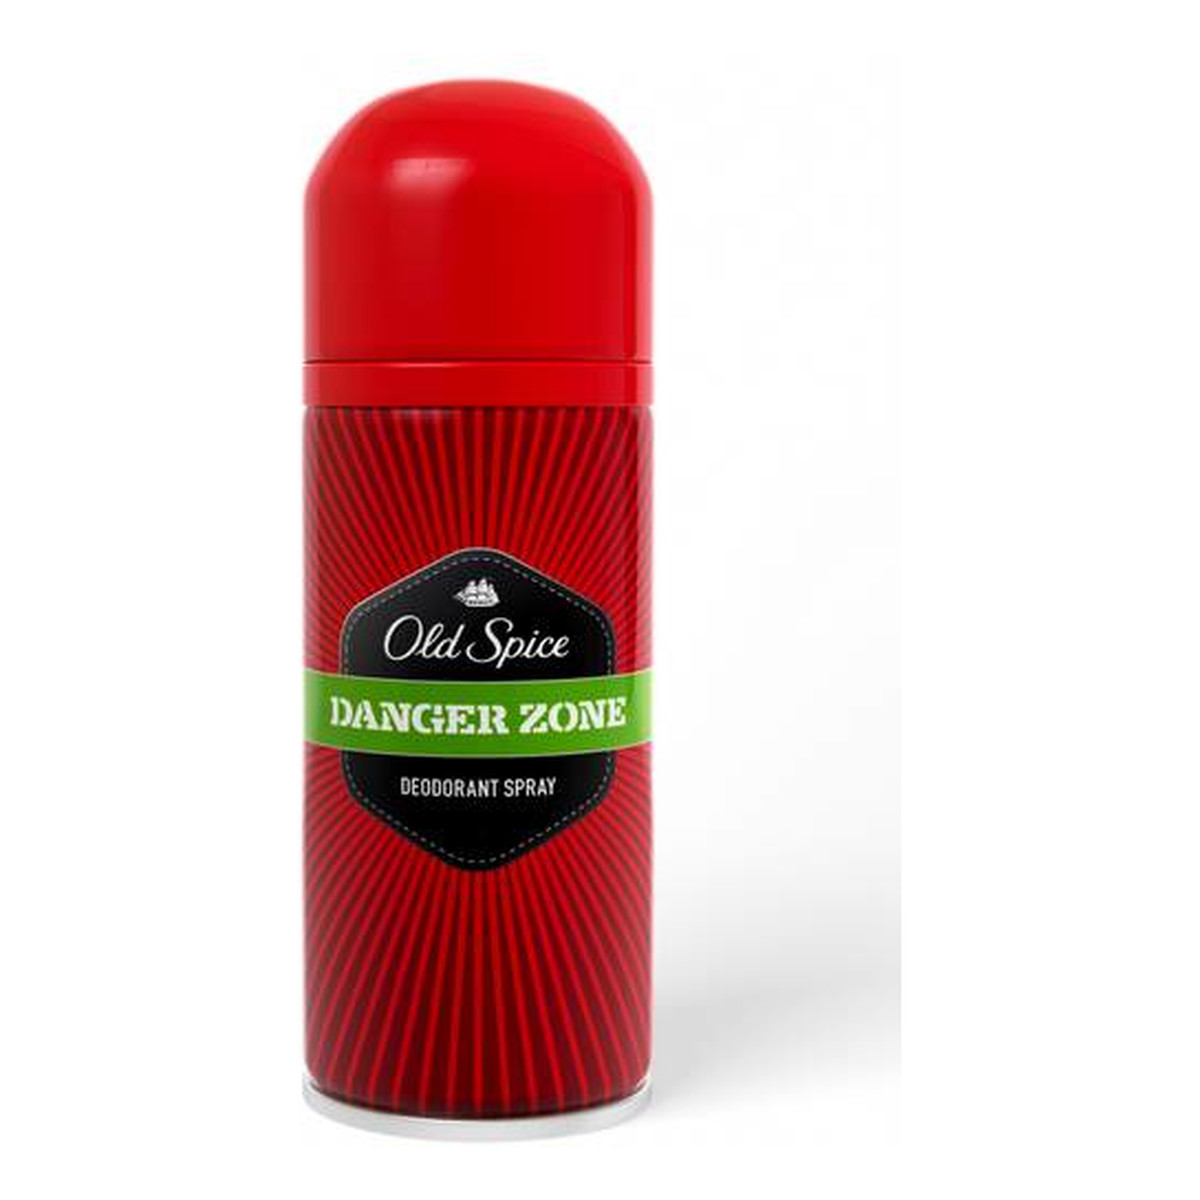 Old Spice Danger Zone Dezodorant Spray 125ml